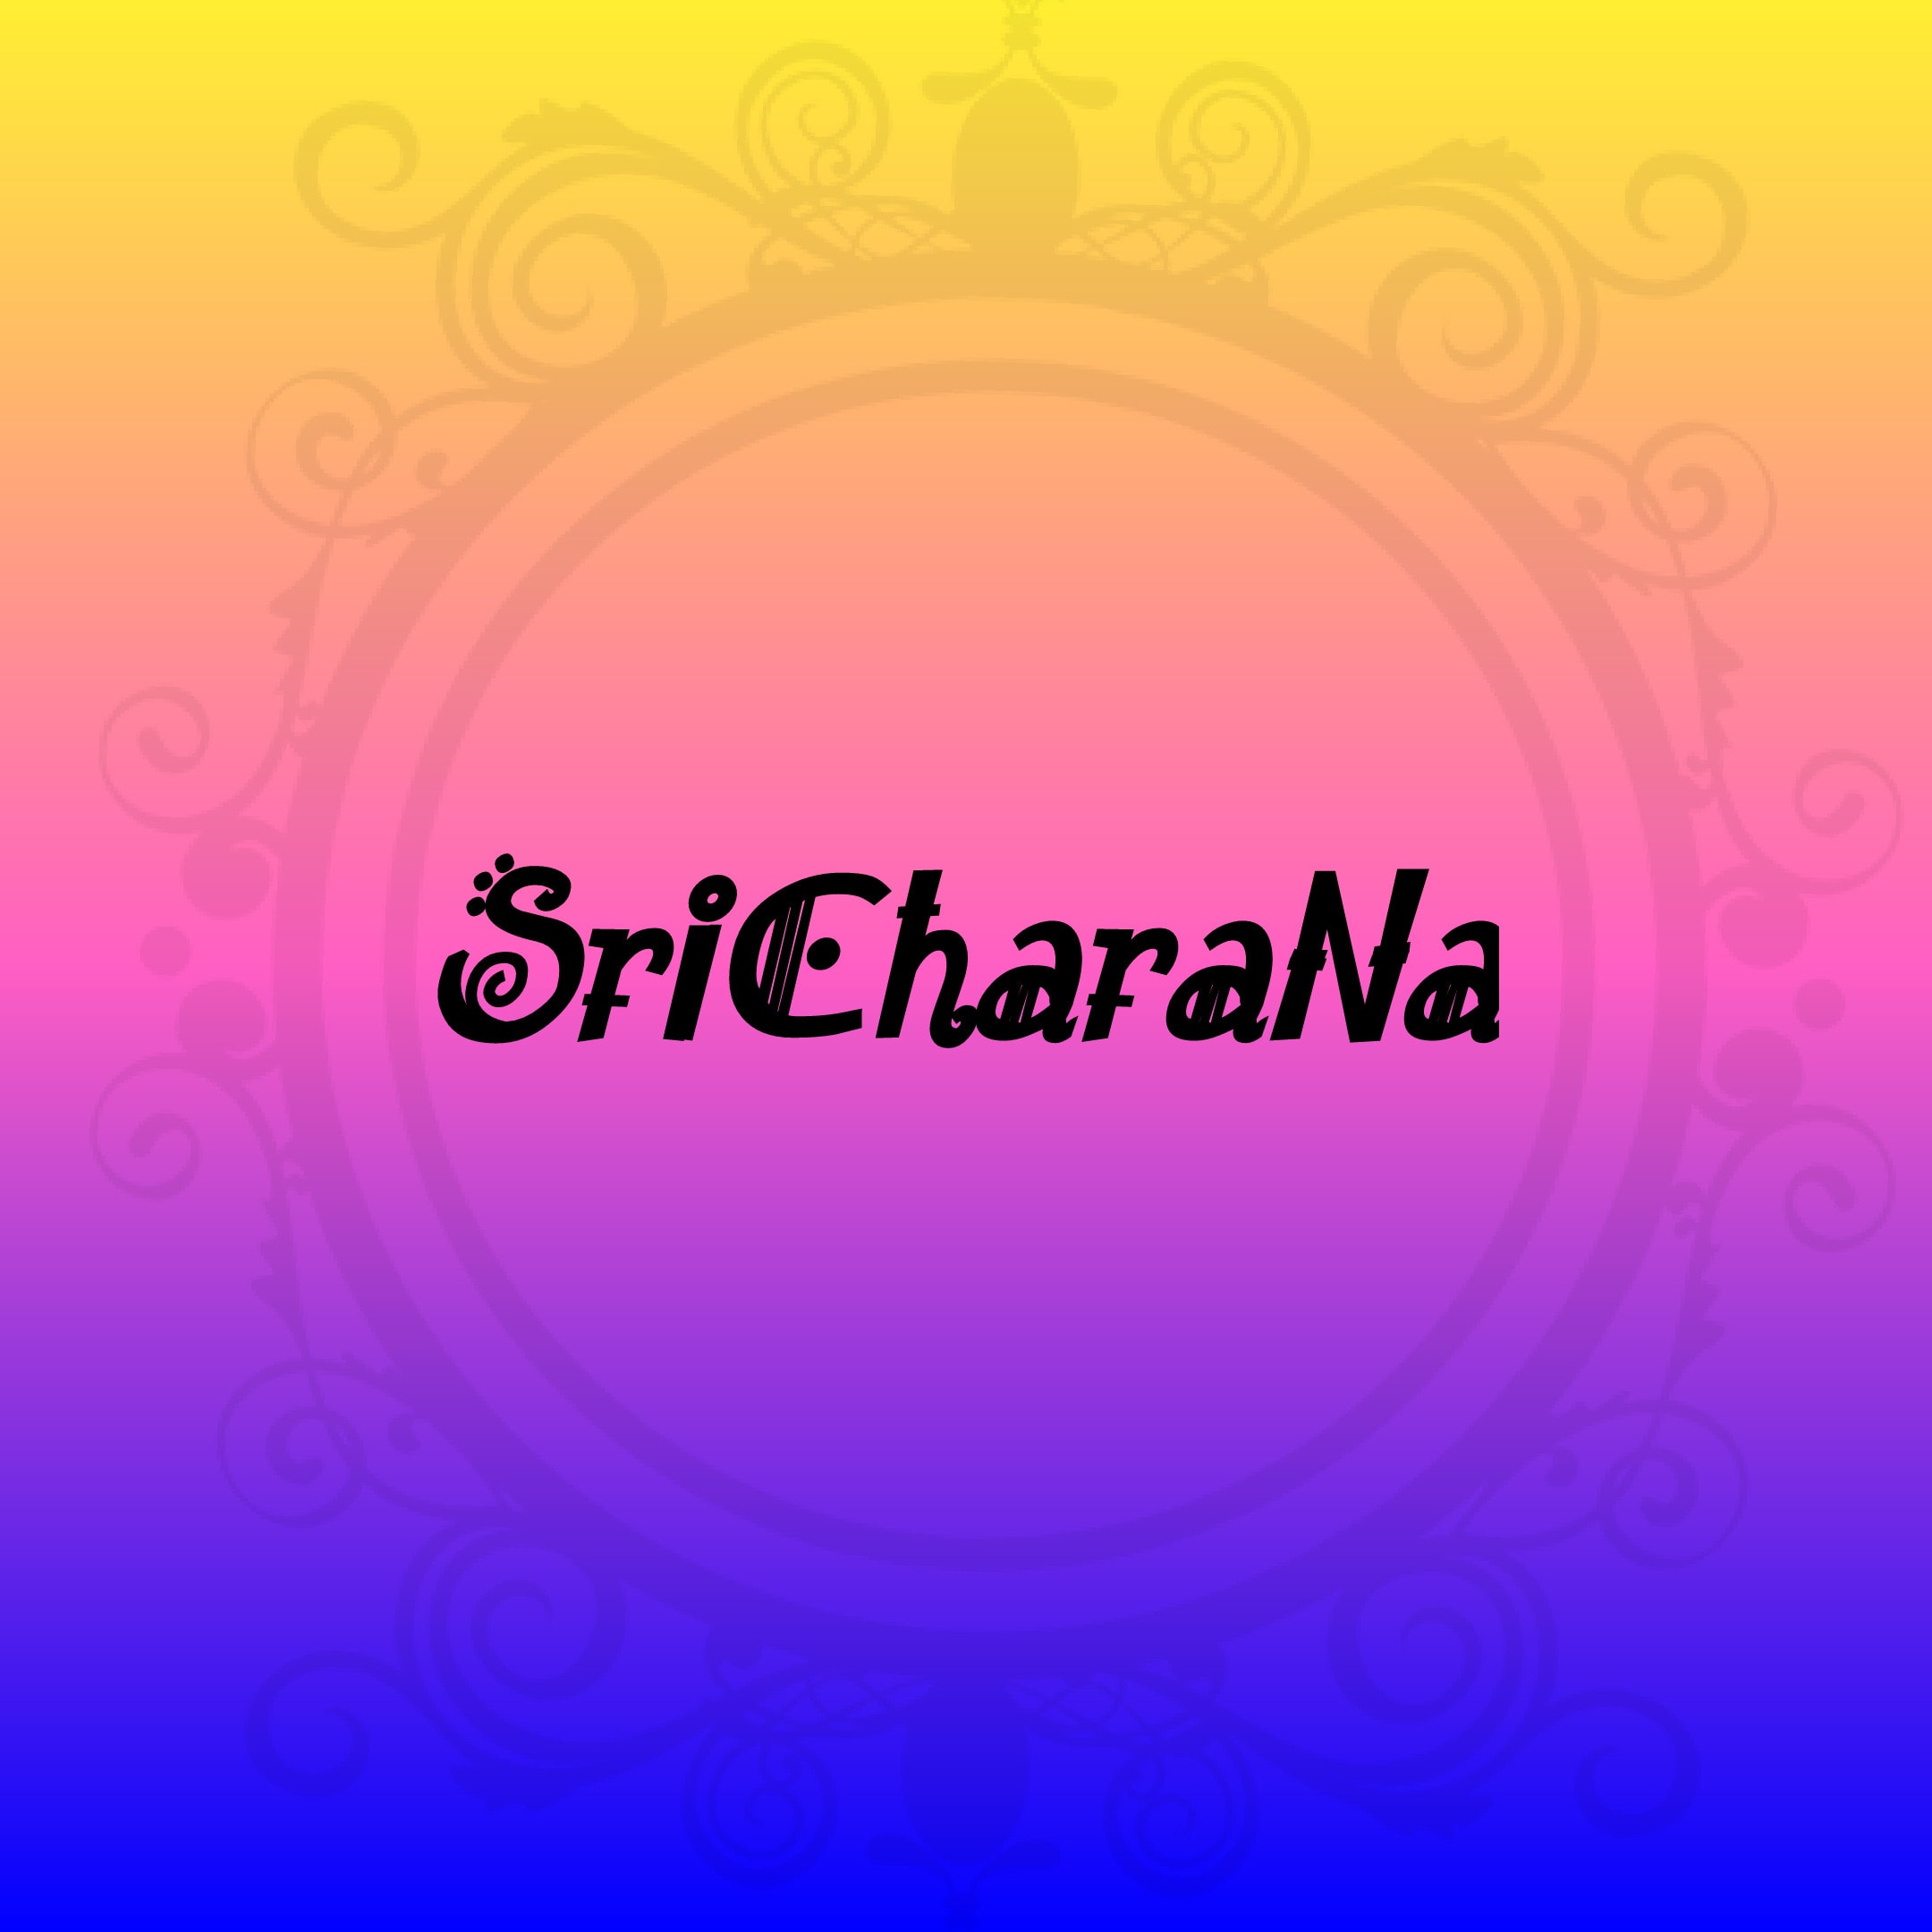 Sricharana